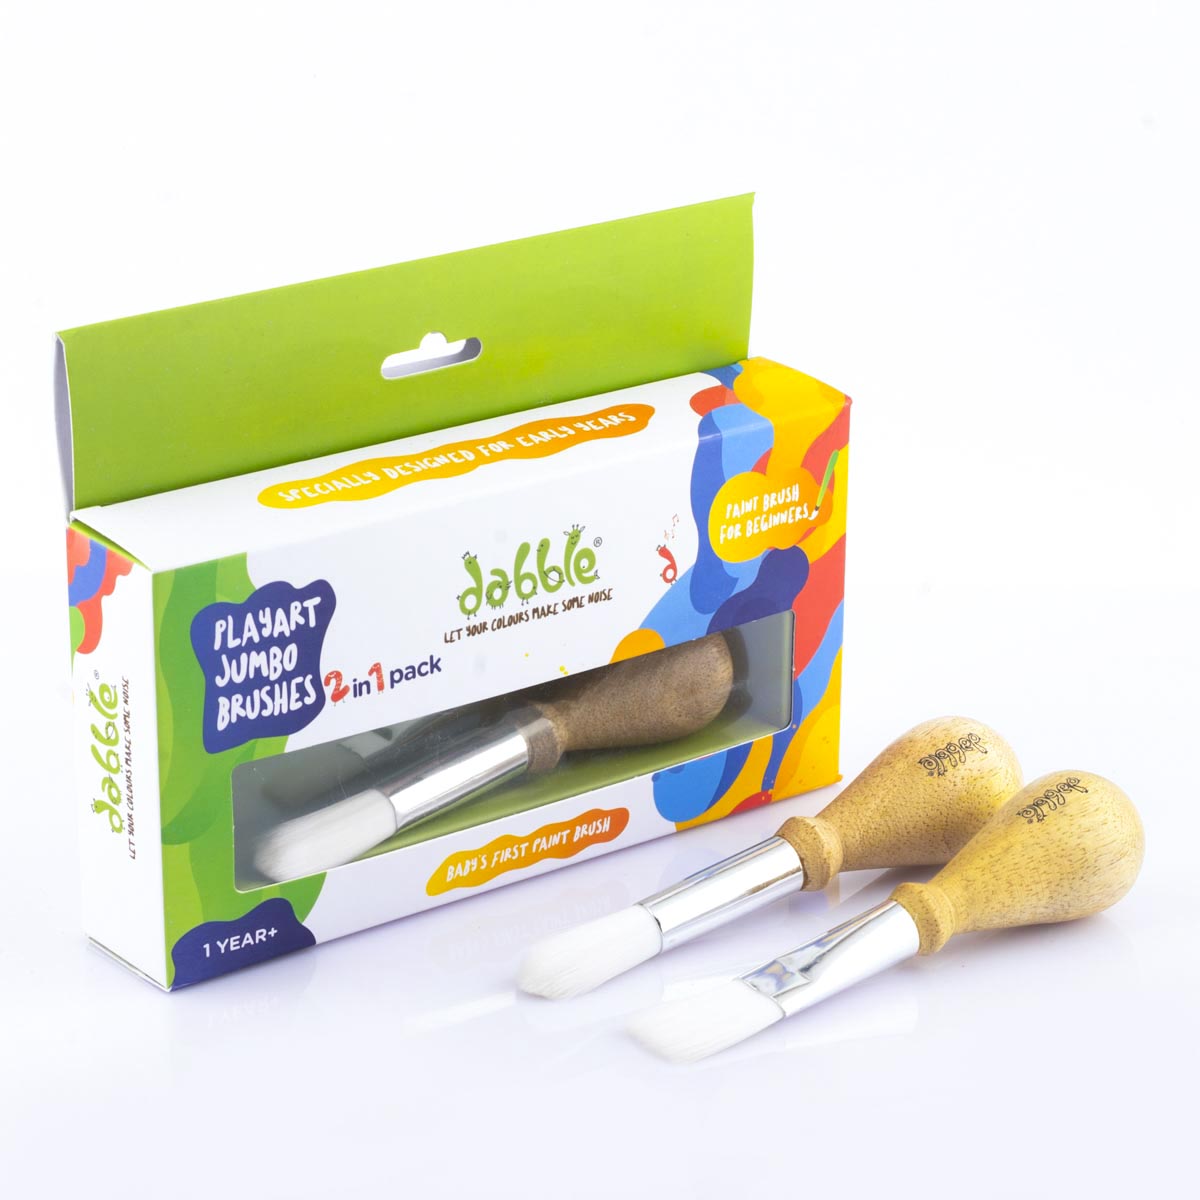 Dabble Jumbo Paint Brush Set | Baby’s First Paint Brush 1 Year +